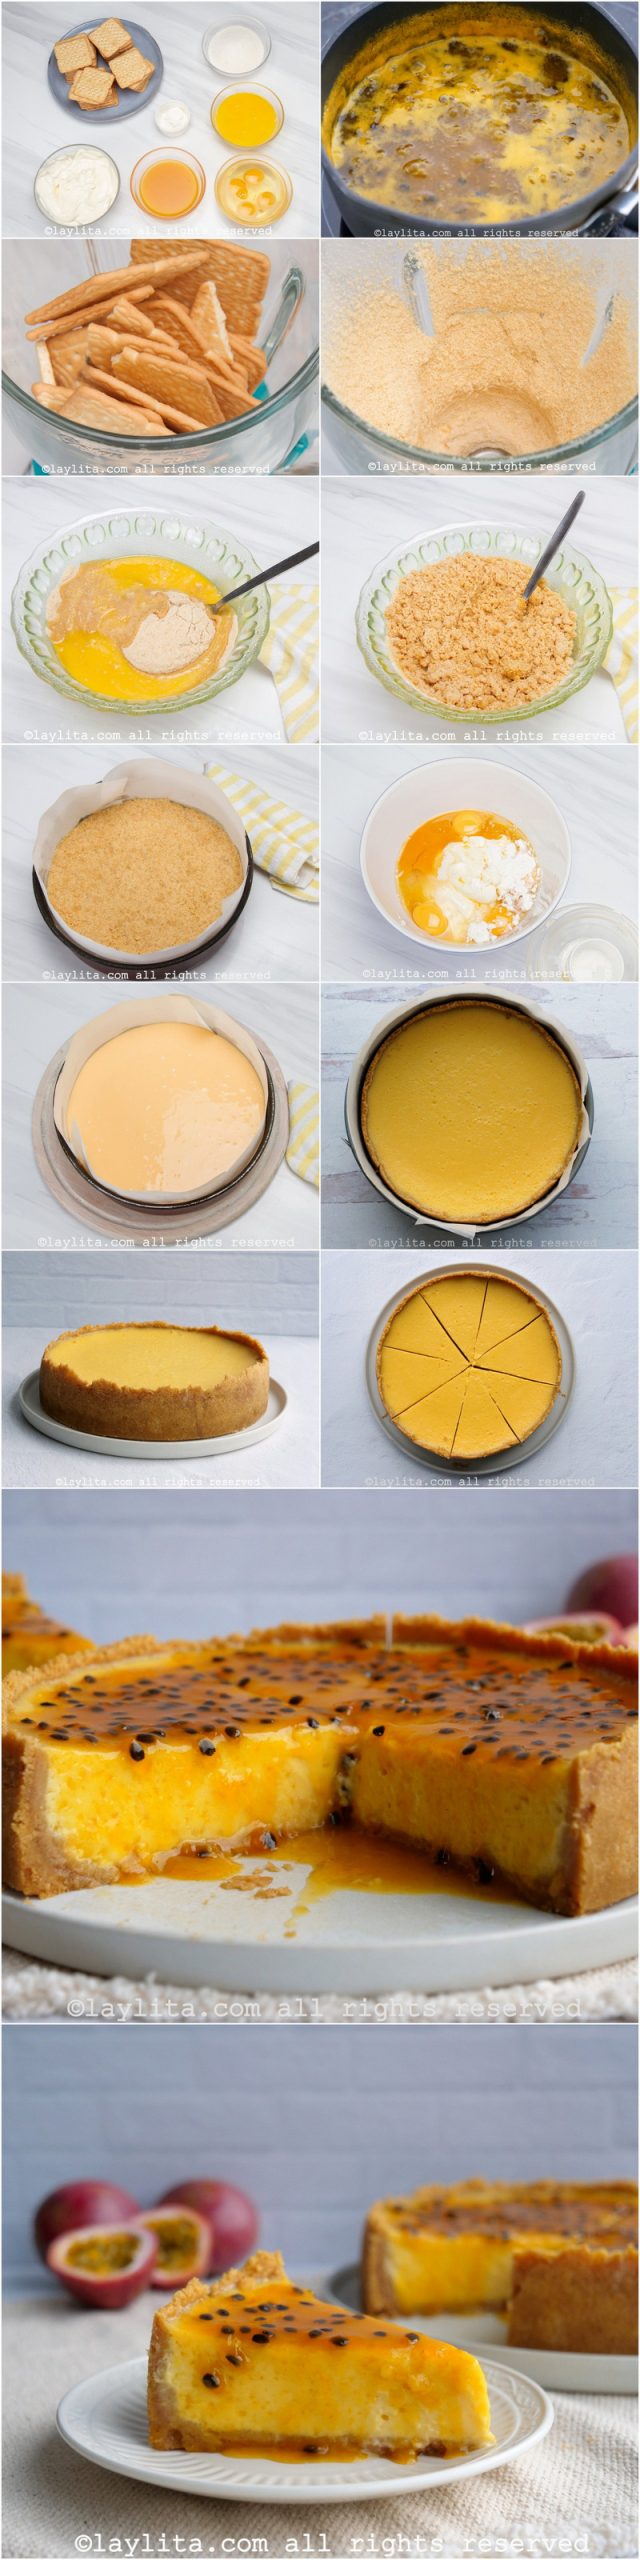 Fotos do passo a passo do preparo da cheesecake de maracujá